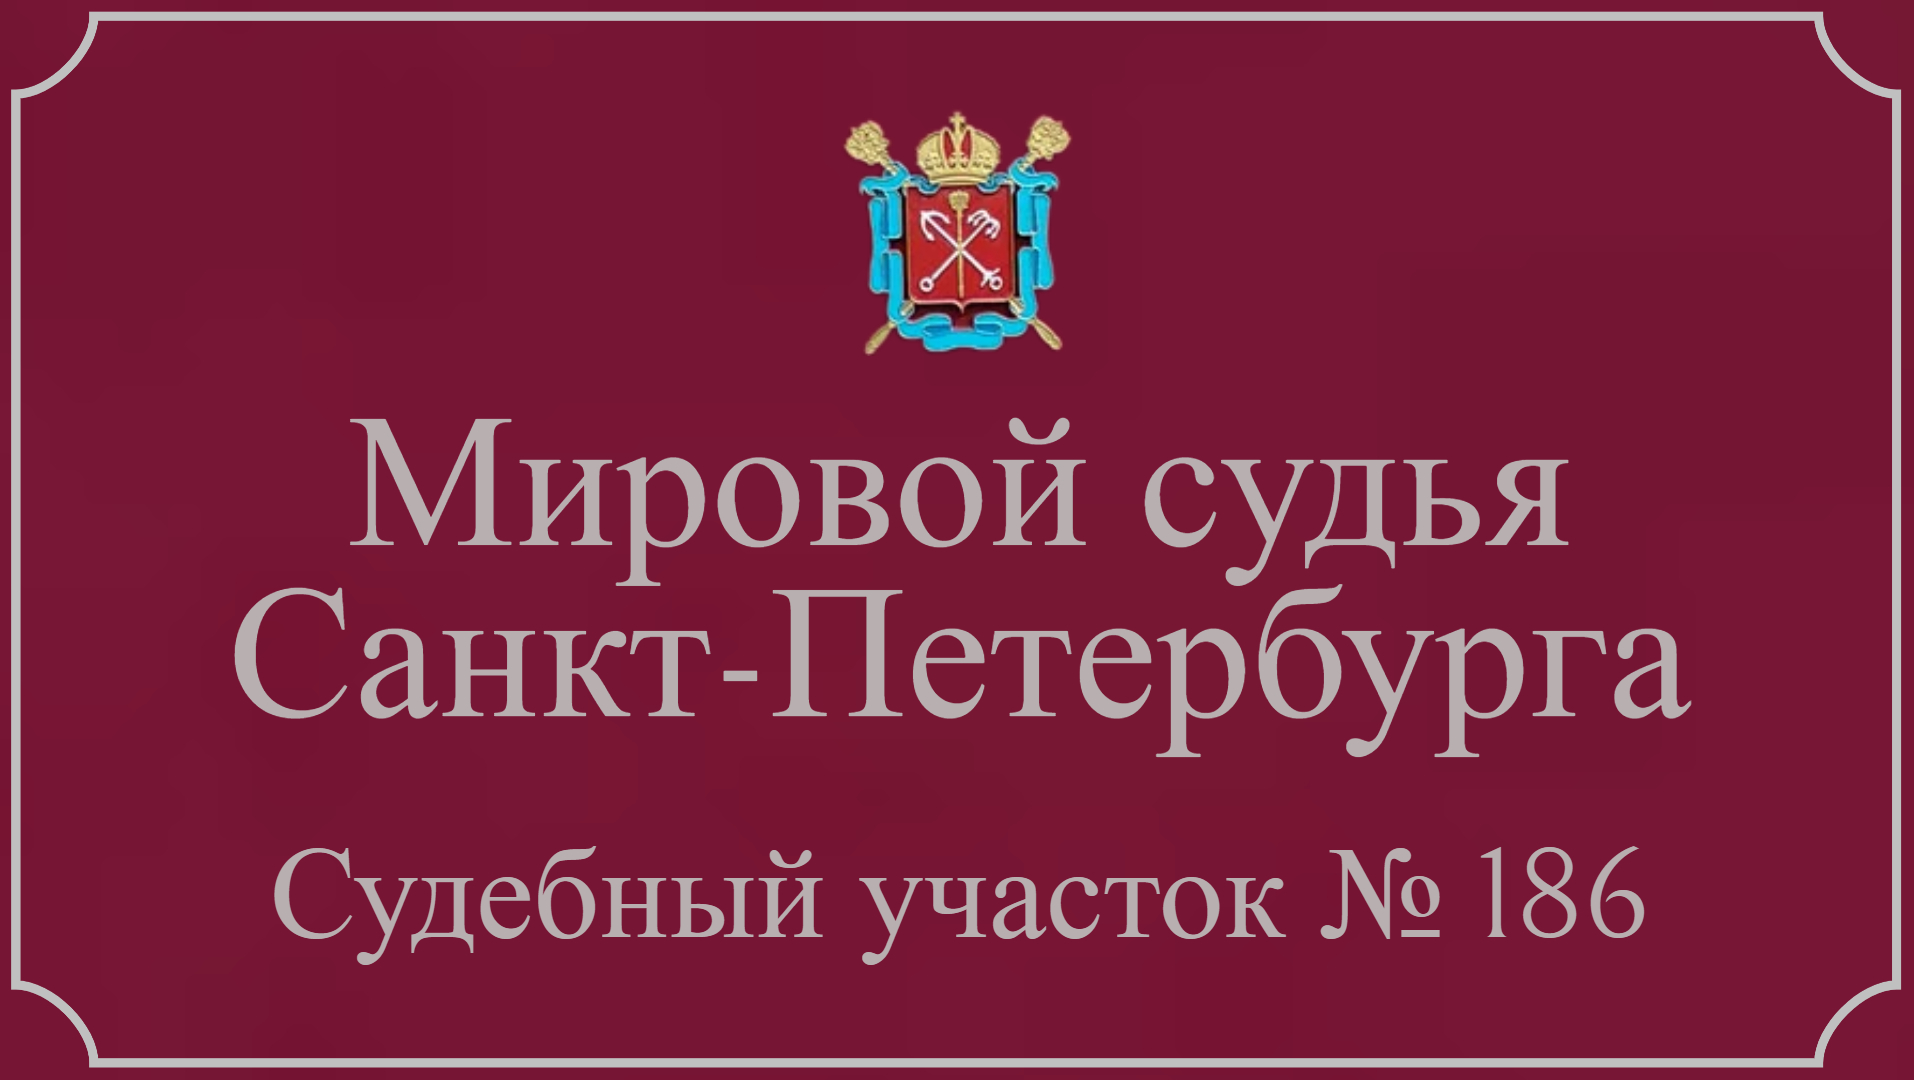 Информация по 186 судебному участку в Санкт-Петербурге.